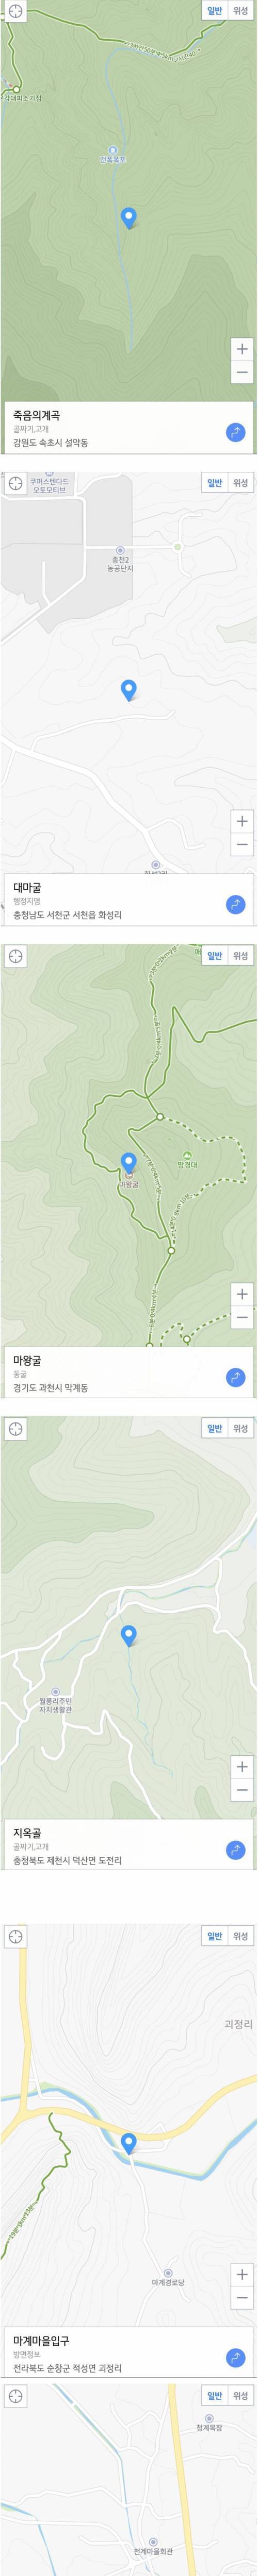 [스압] 의외로 한국에 있는 지역